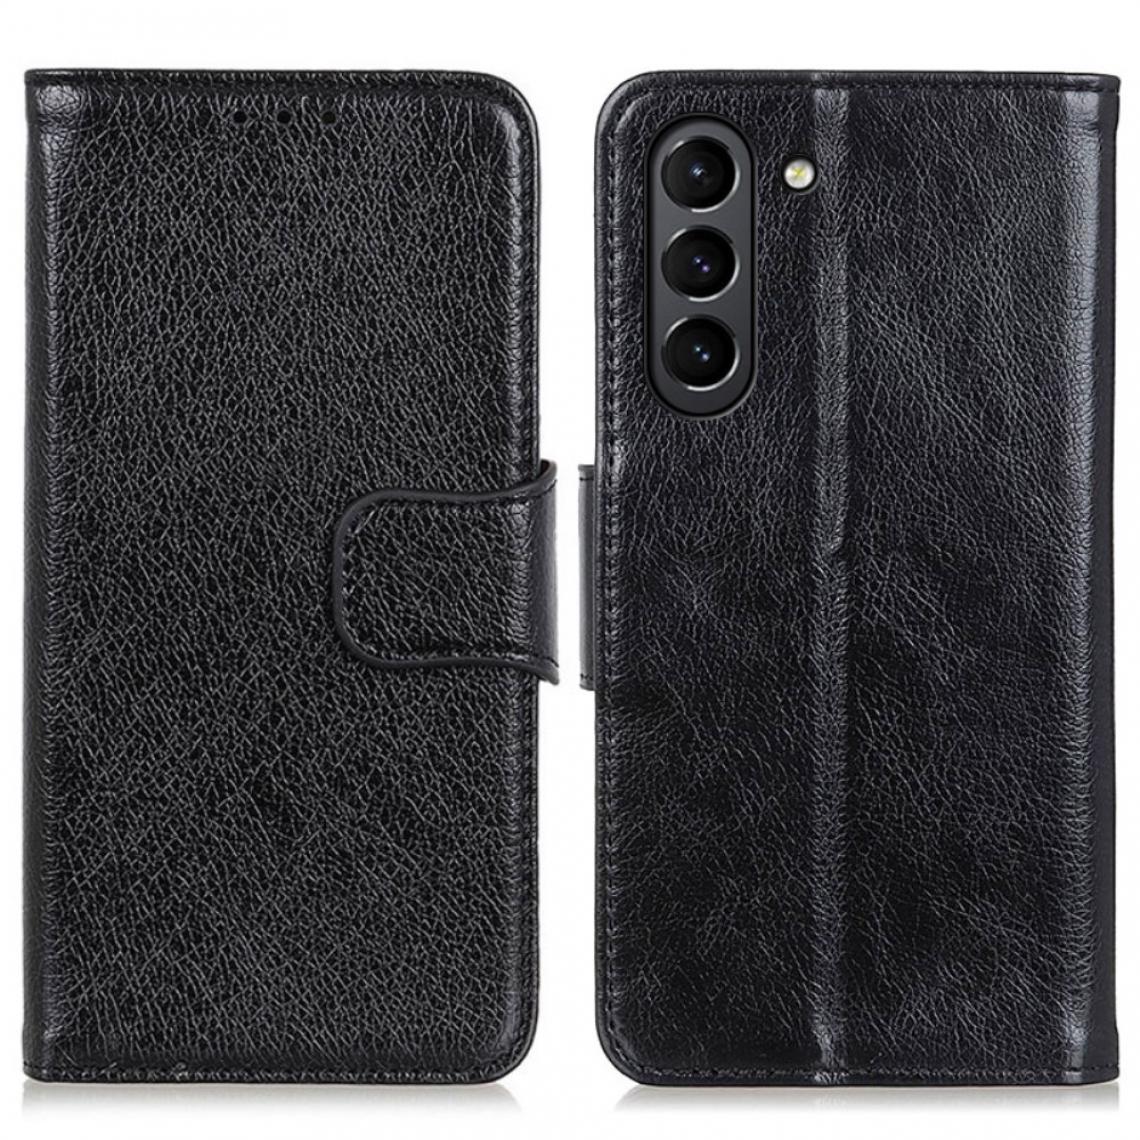 Other - Etui en PU Texture nappa fendue noir pour votre Samsung Galaxy S21 FE - Coque, étui smartphone